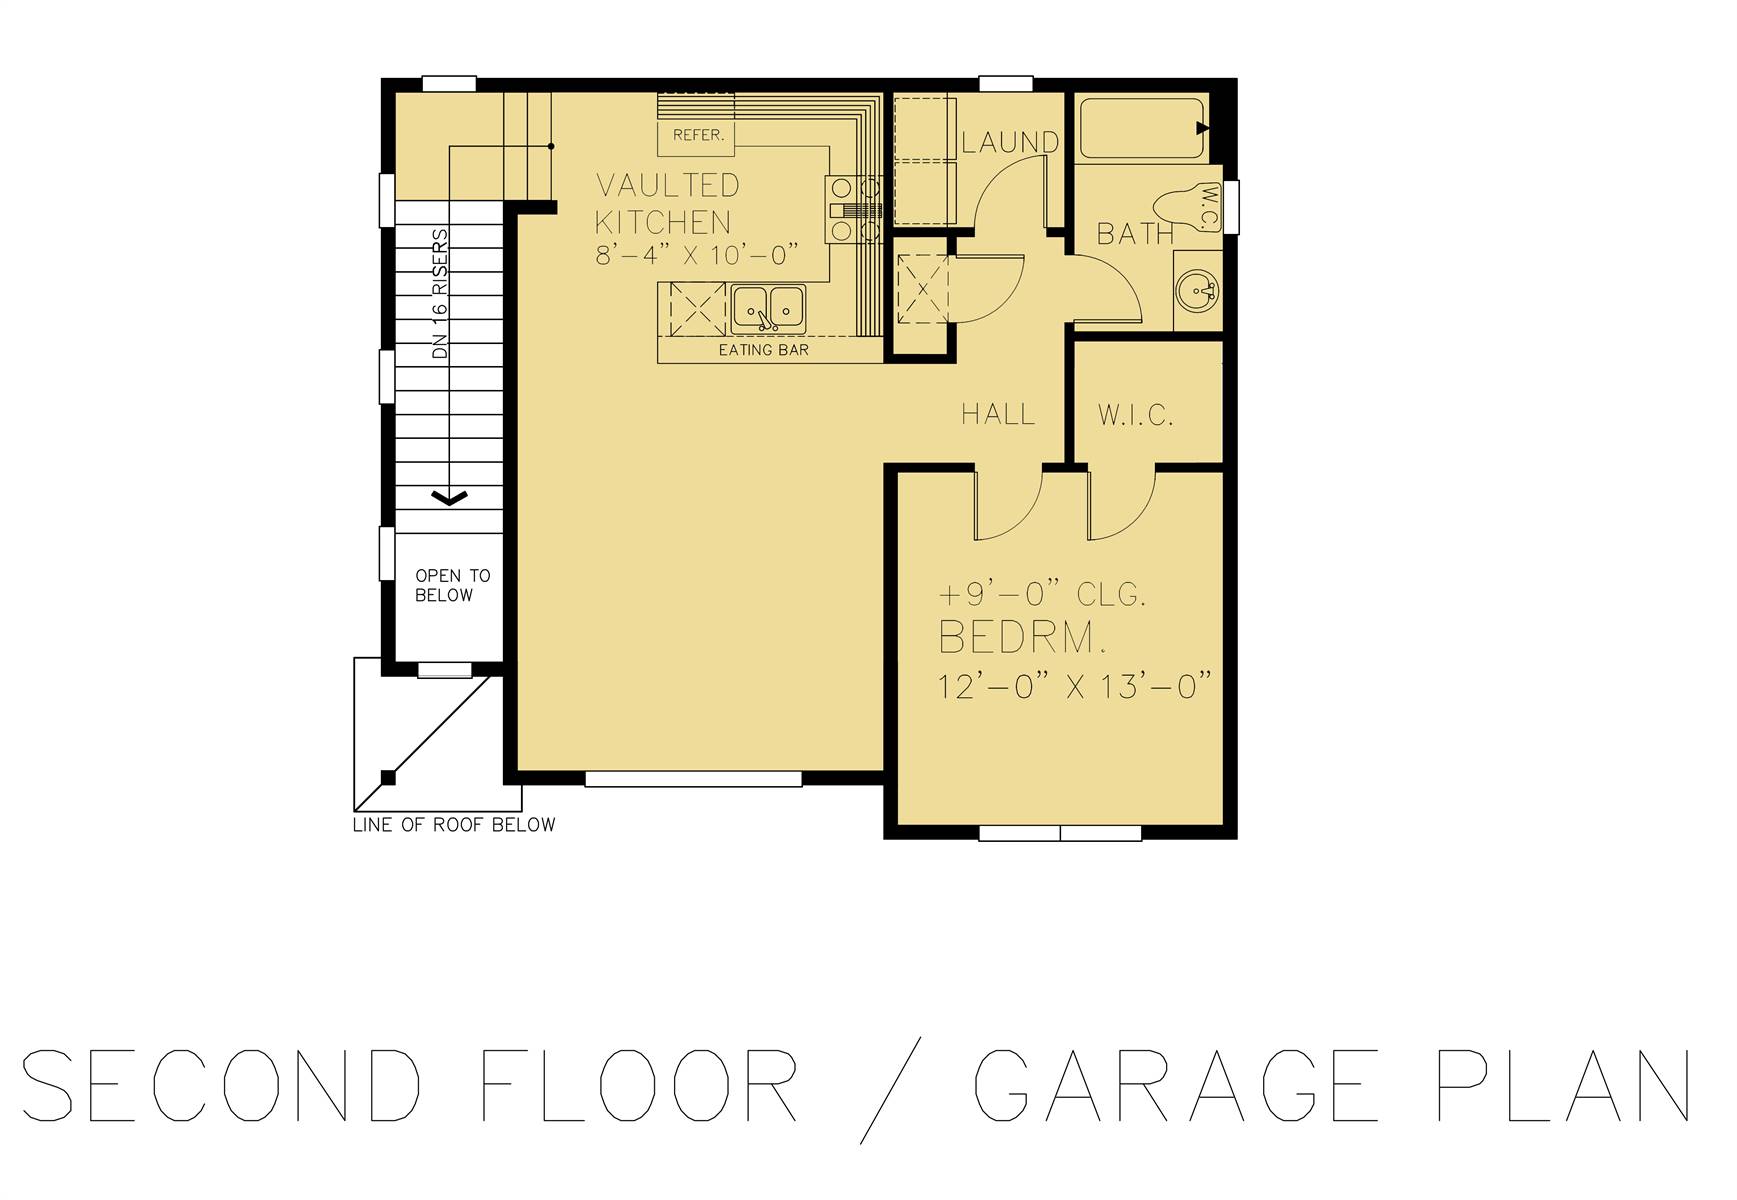 Second Floor - Garage